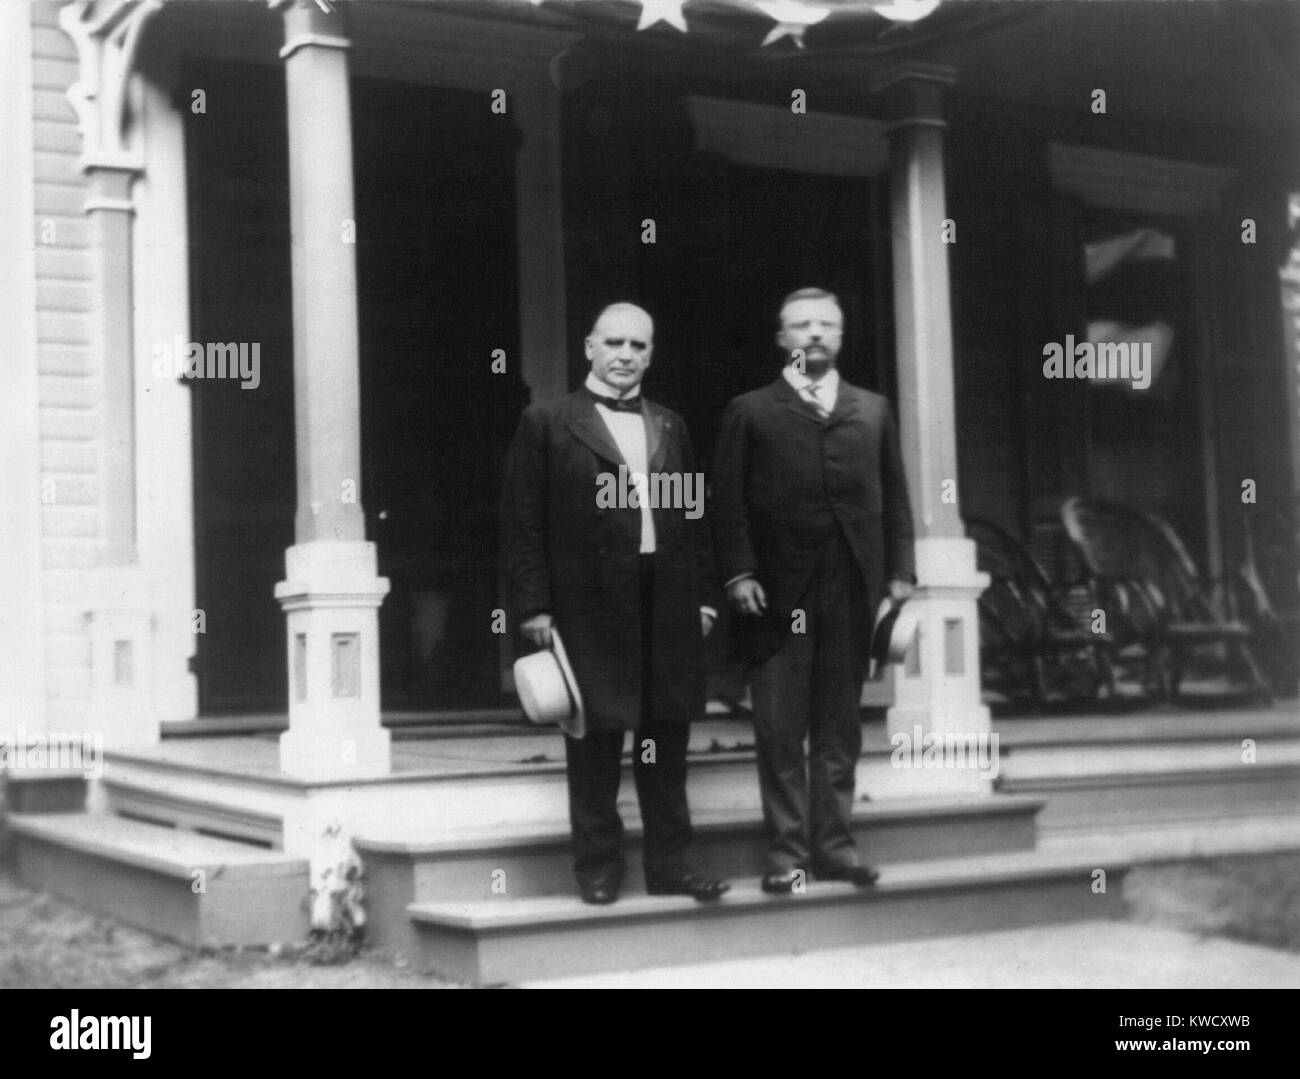 Le Président William McKinley et Theodore Roosevelt Gouverneur NY debout sur l'étape de porche. Probablement à Canton, Ohio, McKinleys accueil au cours de la campagne présidentielle de 1900 (BSLOC 2017 4 33) Banque D'Images